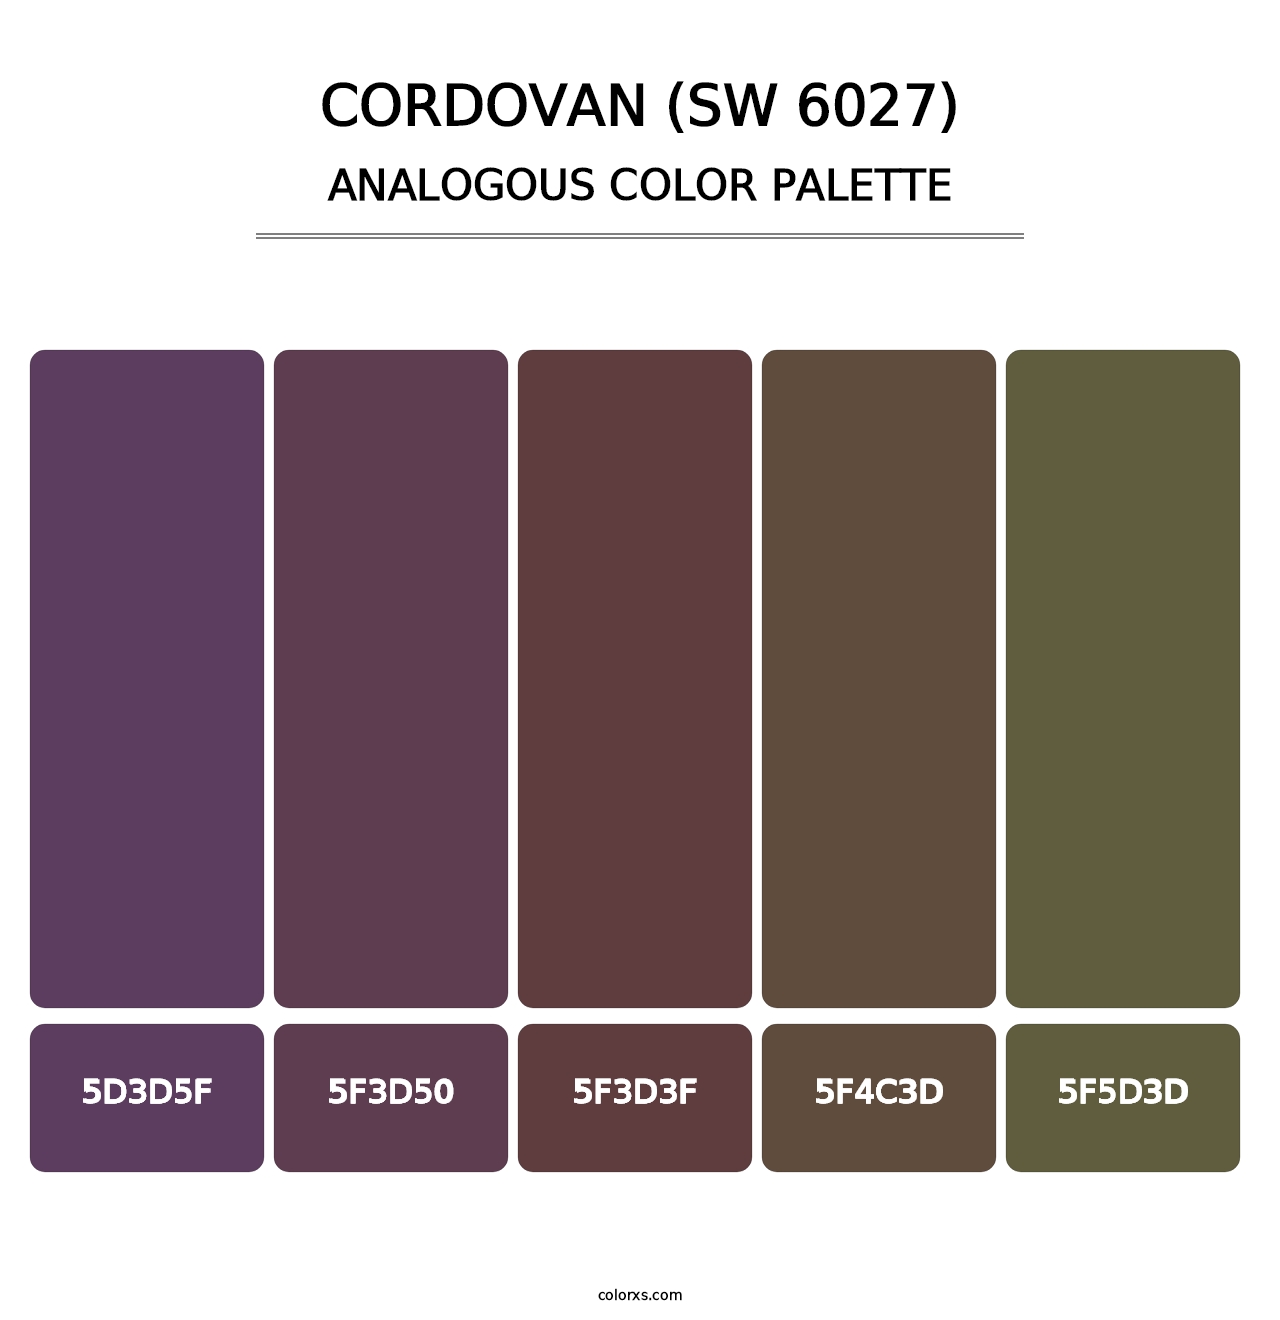 Cordovan (SW 6027) - Analogous Color Palette